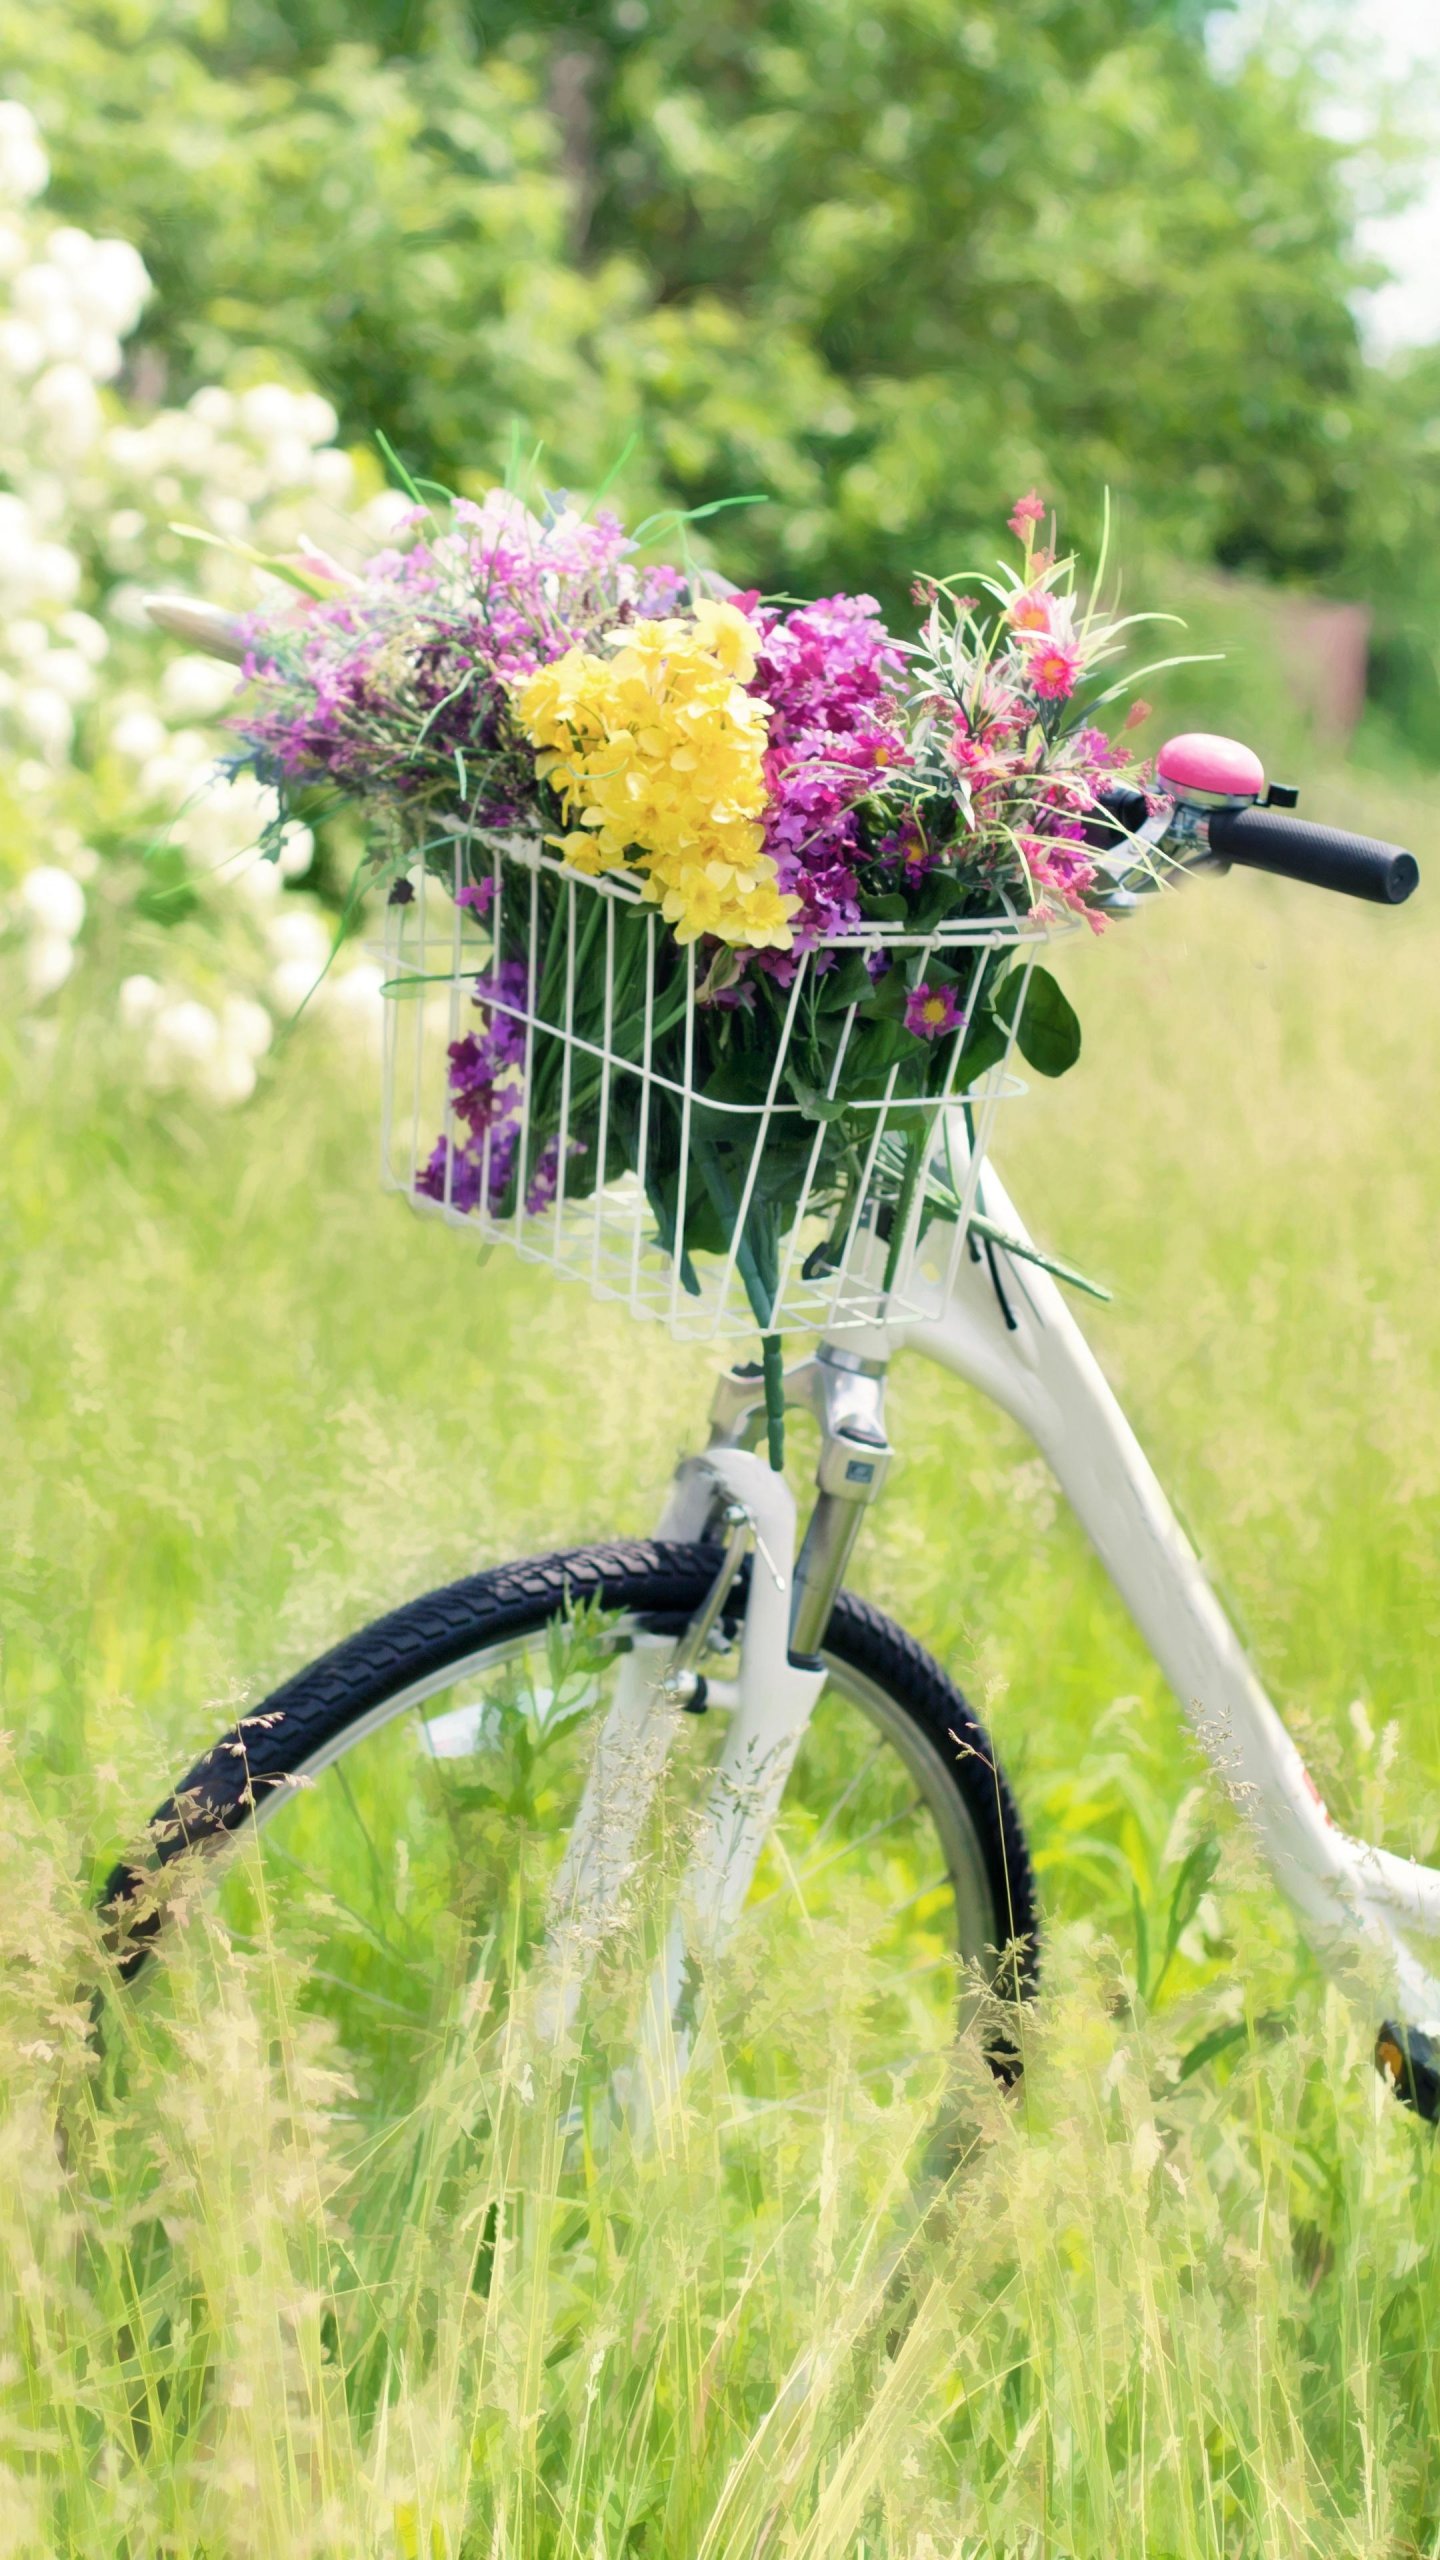 fond d'écran romantique hd,fleur,vélo,accessoire de vélo,plante,véhicule